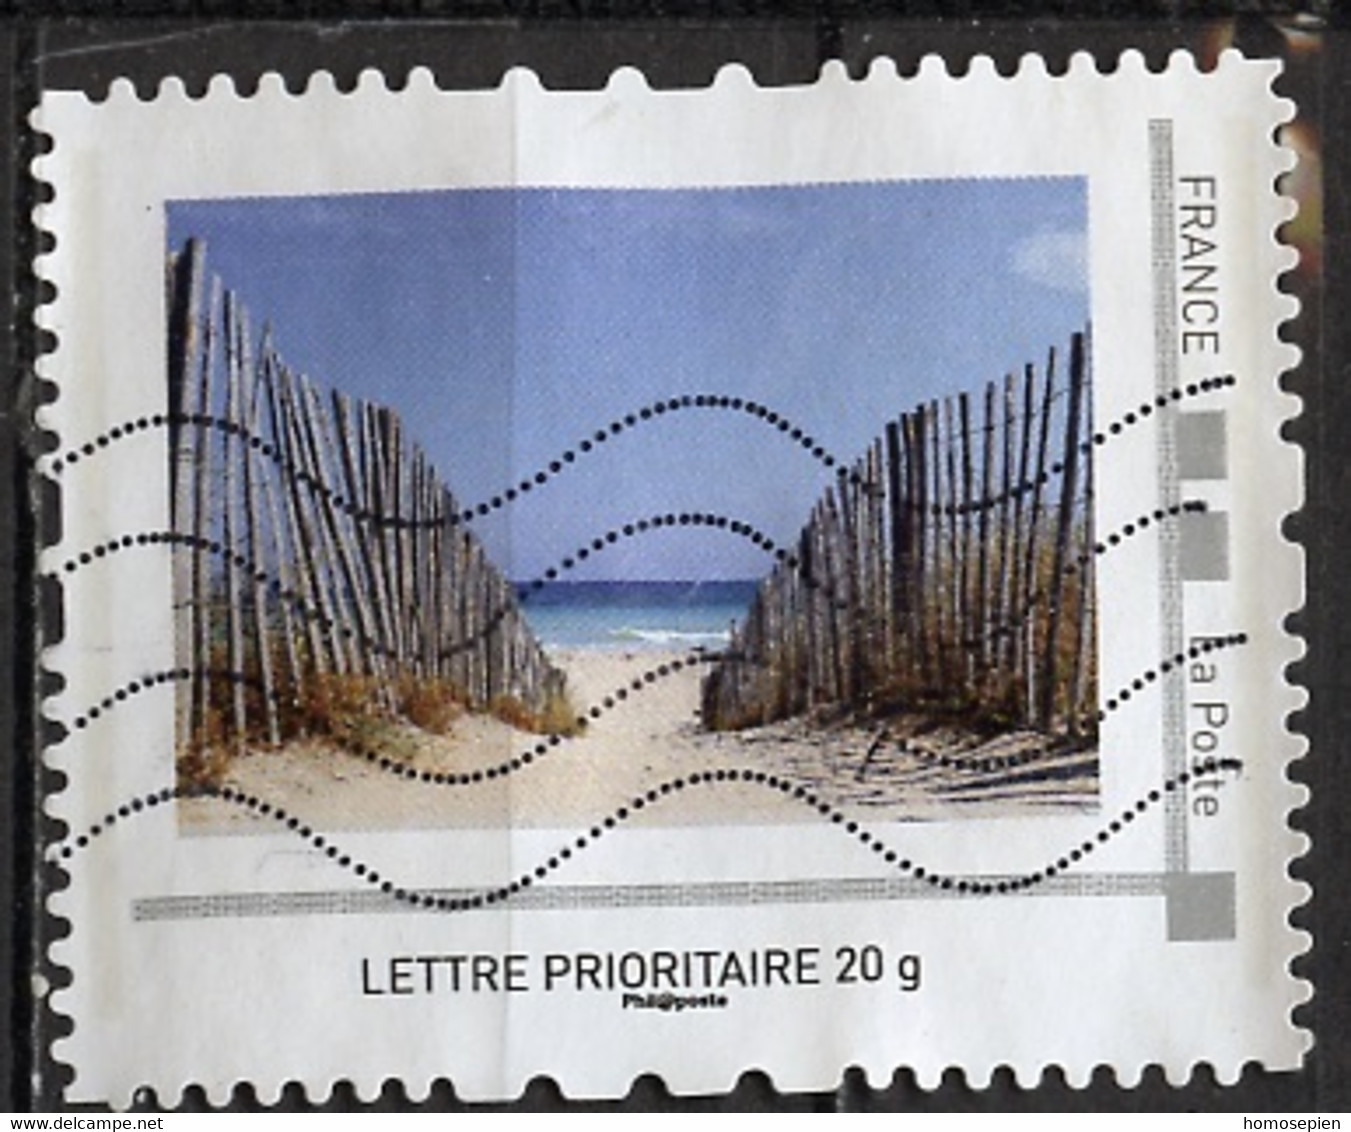 France - Frankreich Timbre Personnalisé 2008 Y&T N°IDT07-019 - Michel N°BS(?) (o) - Plage Déserte Protégée - Used Stamps